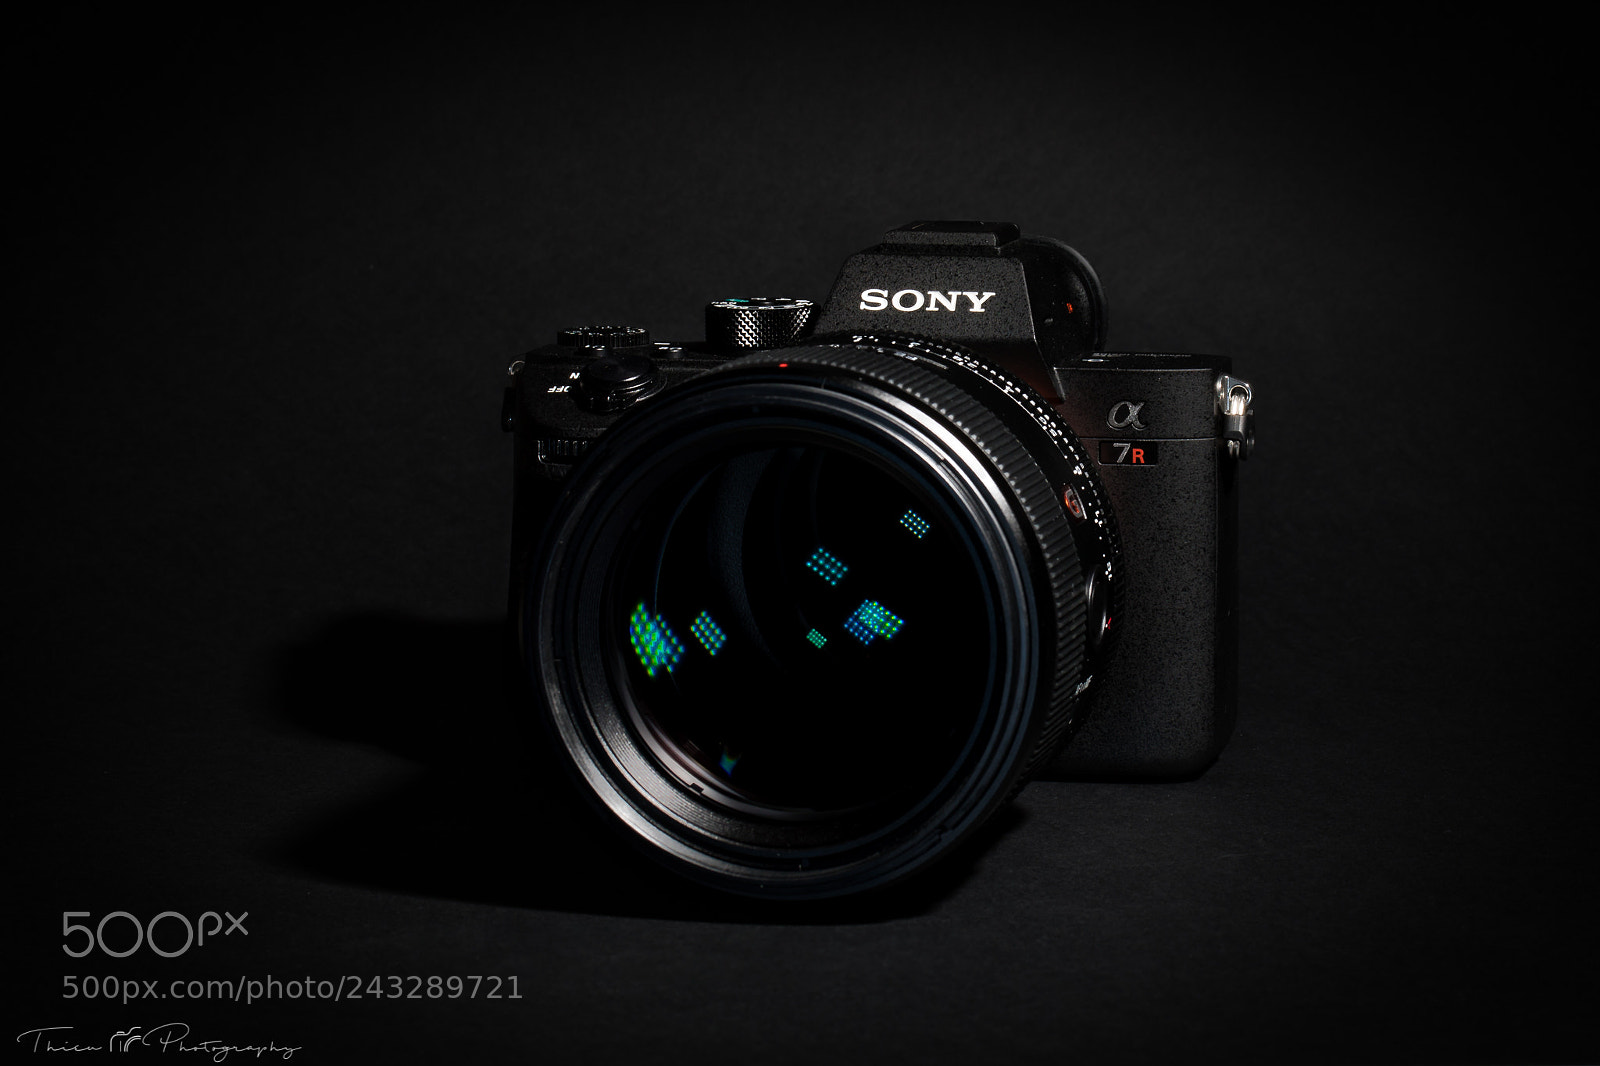 Canon EOS 5D Mark IV sample photo. Sony α7r iii photography